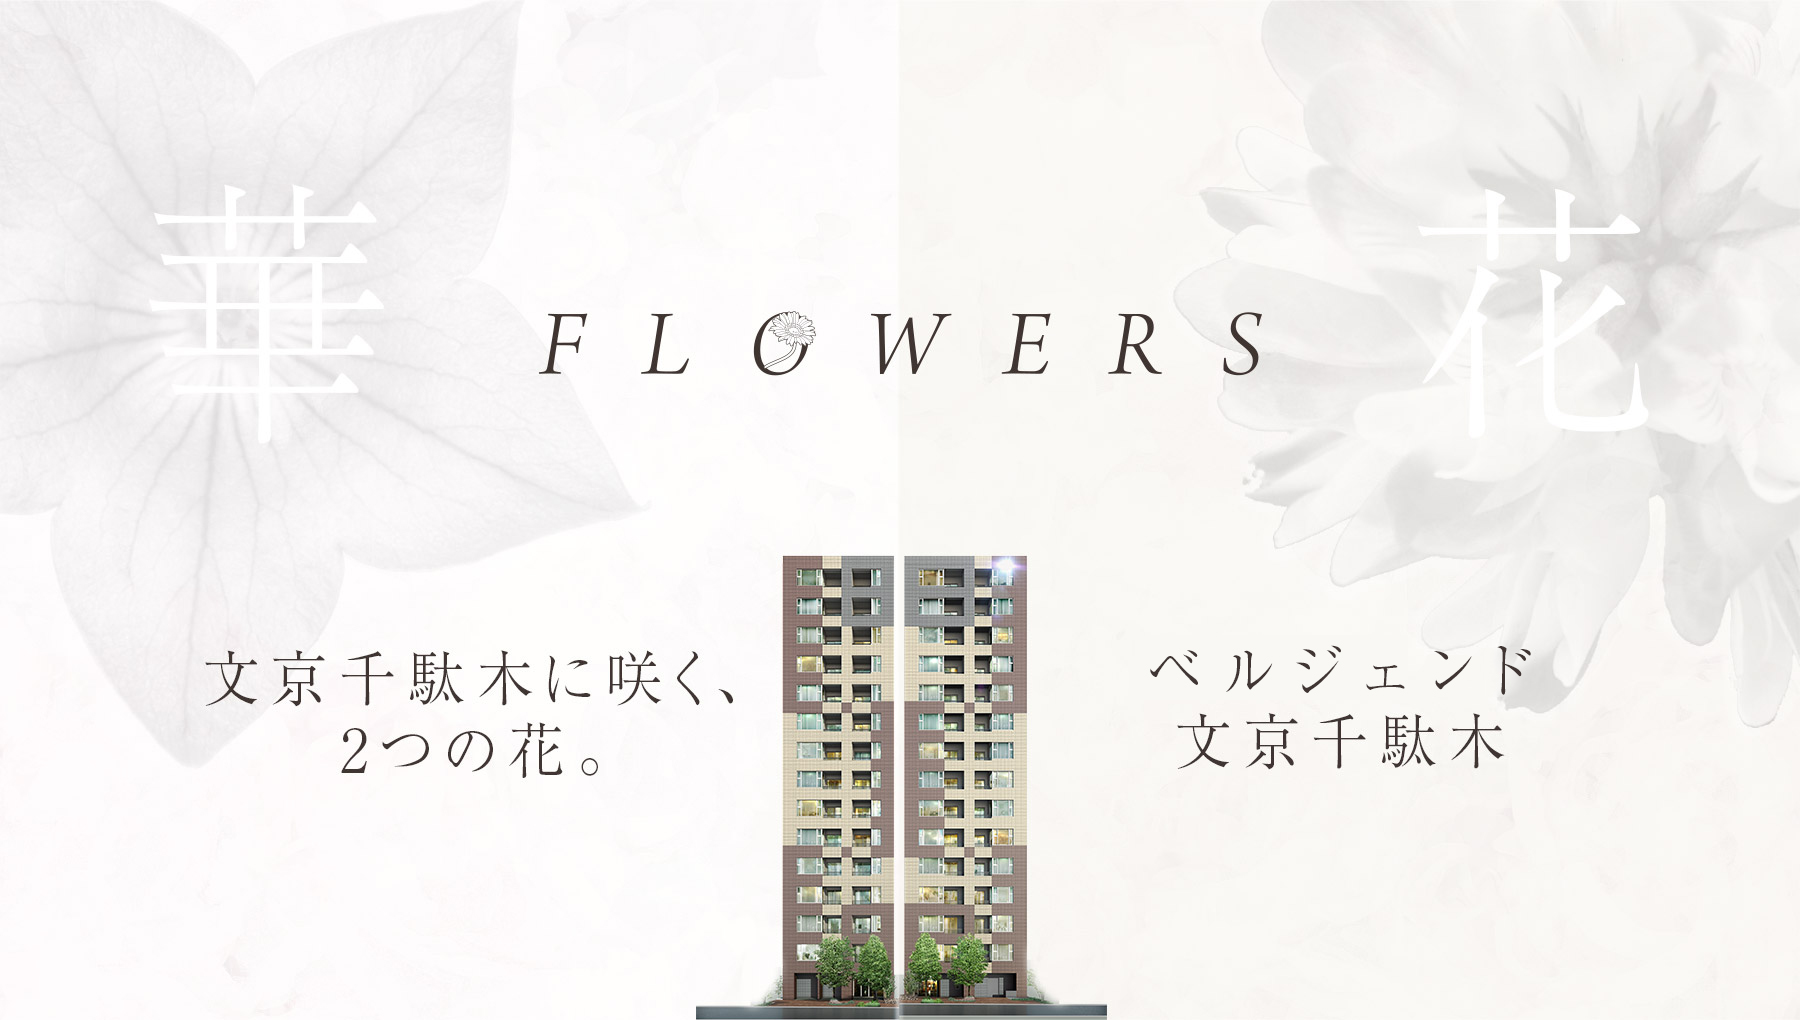 FLOWERS 文京千駄木に咲く、2つの花